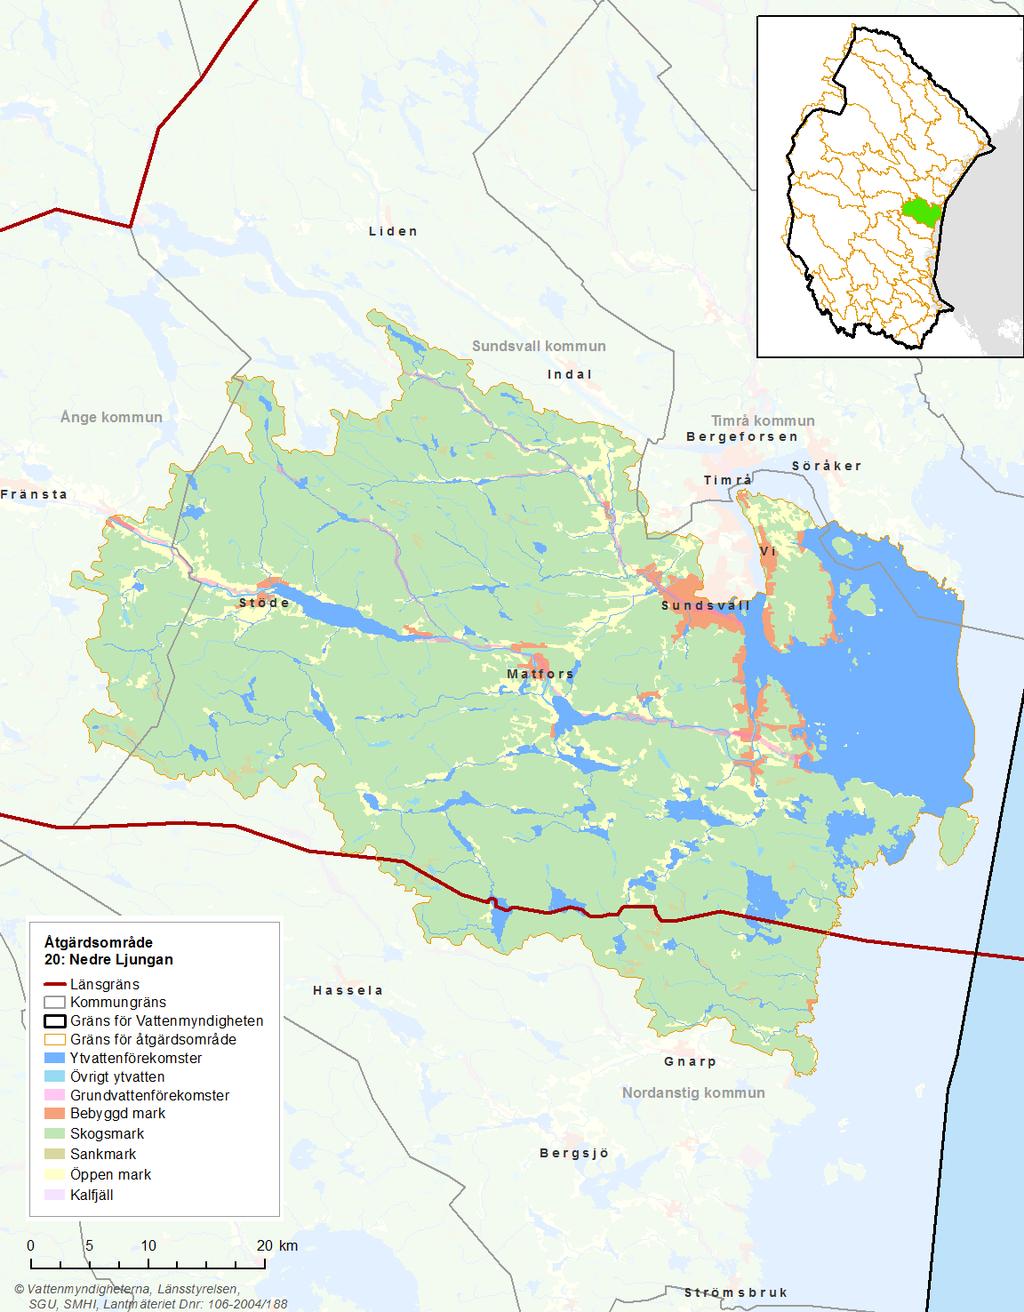 Bild 1: Kartan visar Nedre Ljungans markanvändning